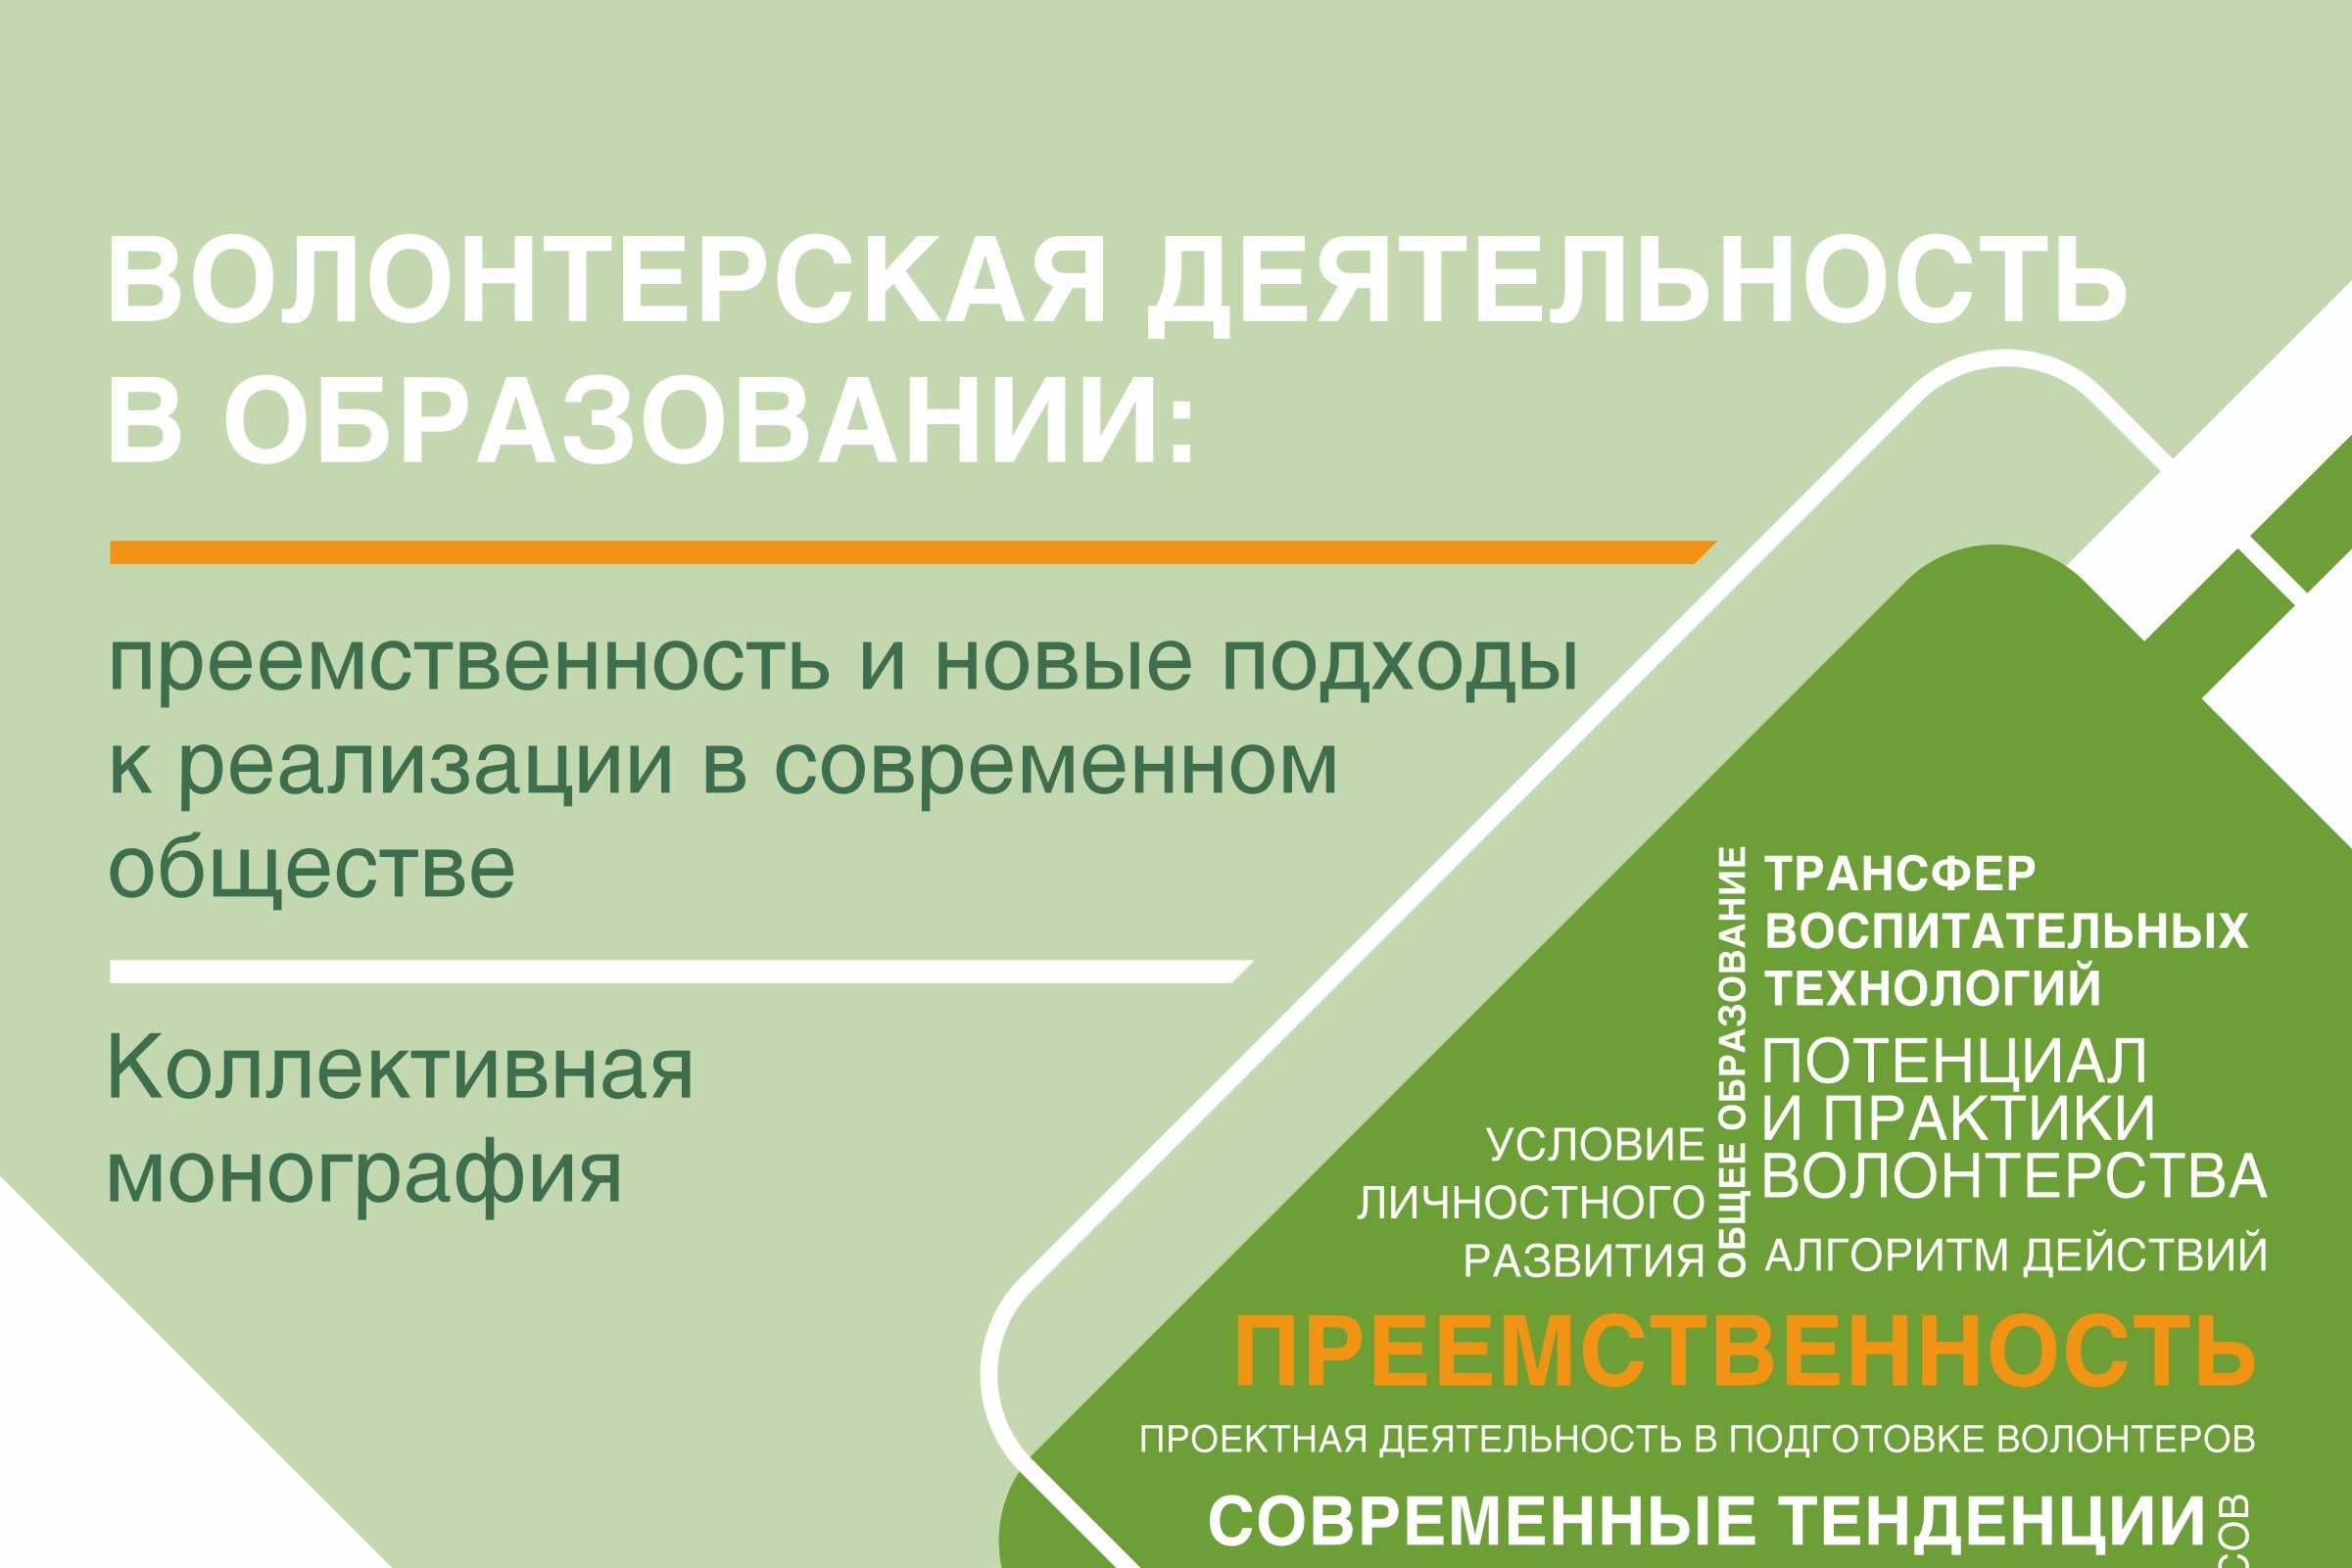 В АлтГПУ издана коллективная монография по волонтерской деятельности